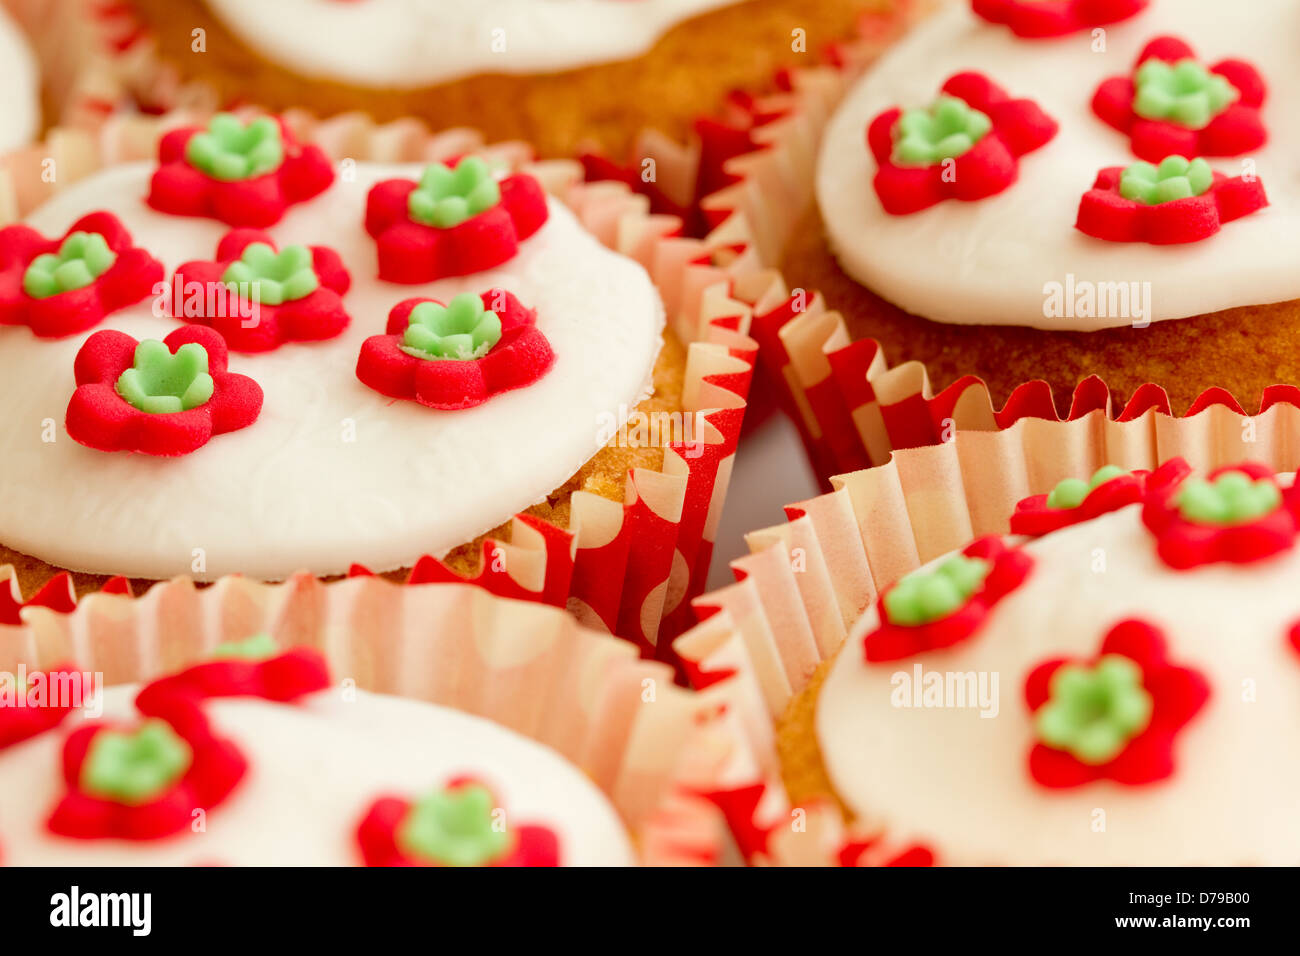 Nahaufnahme einer Reihe von lecker aussehende hausgemachte Muffins Stockfoto